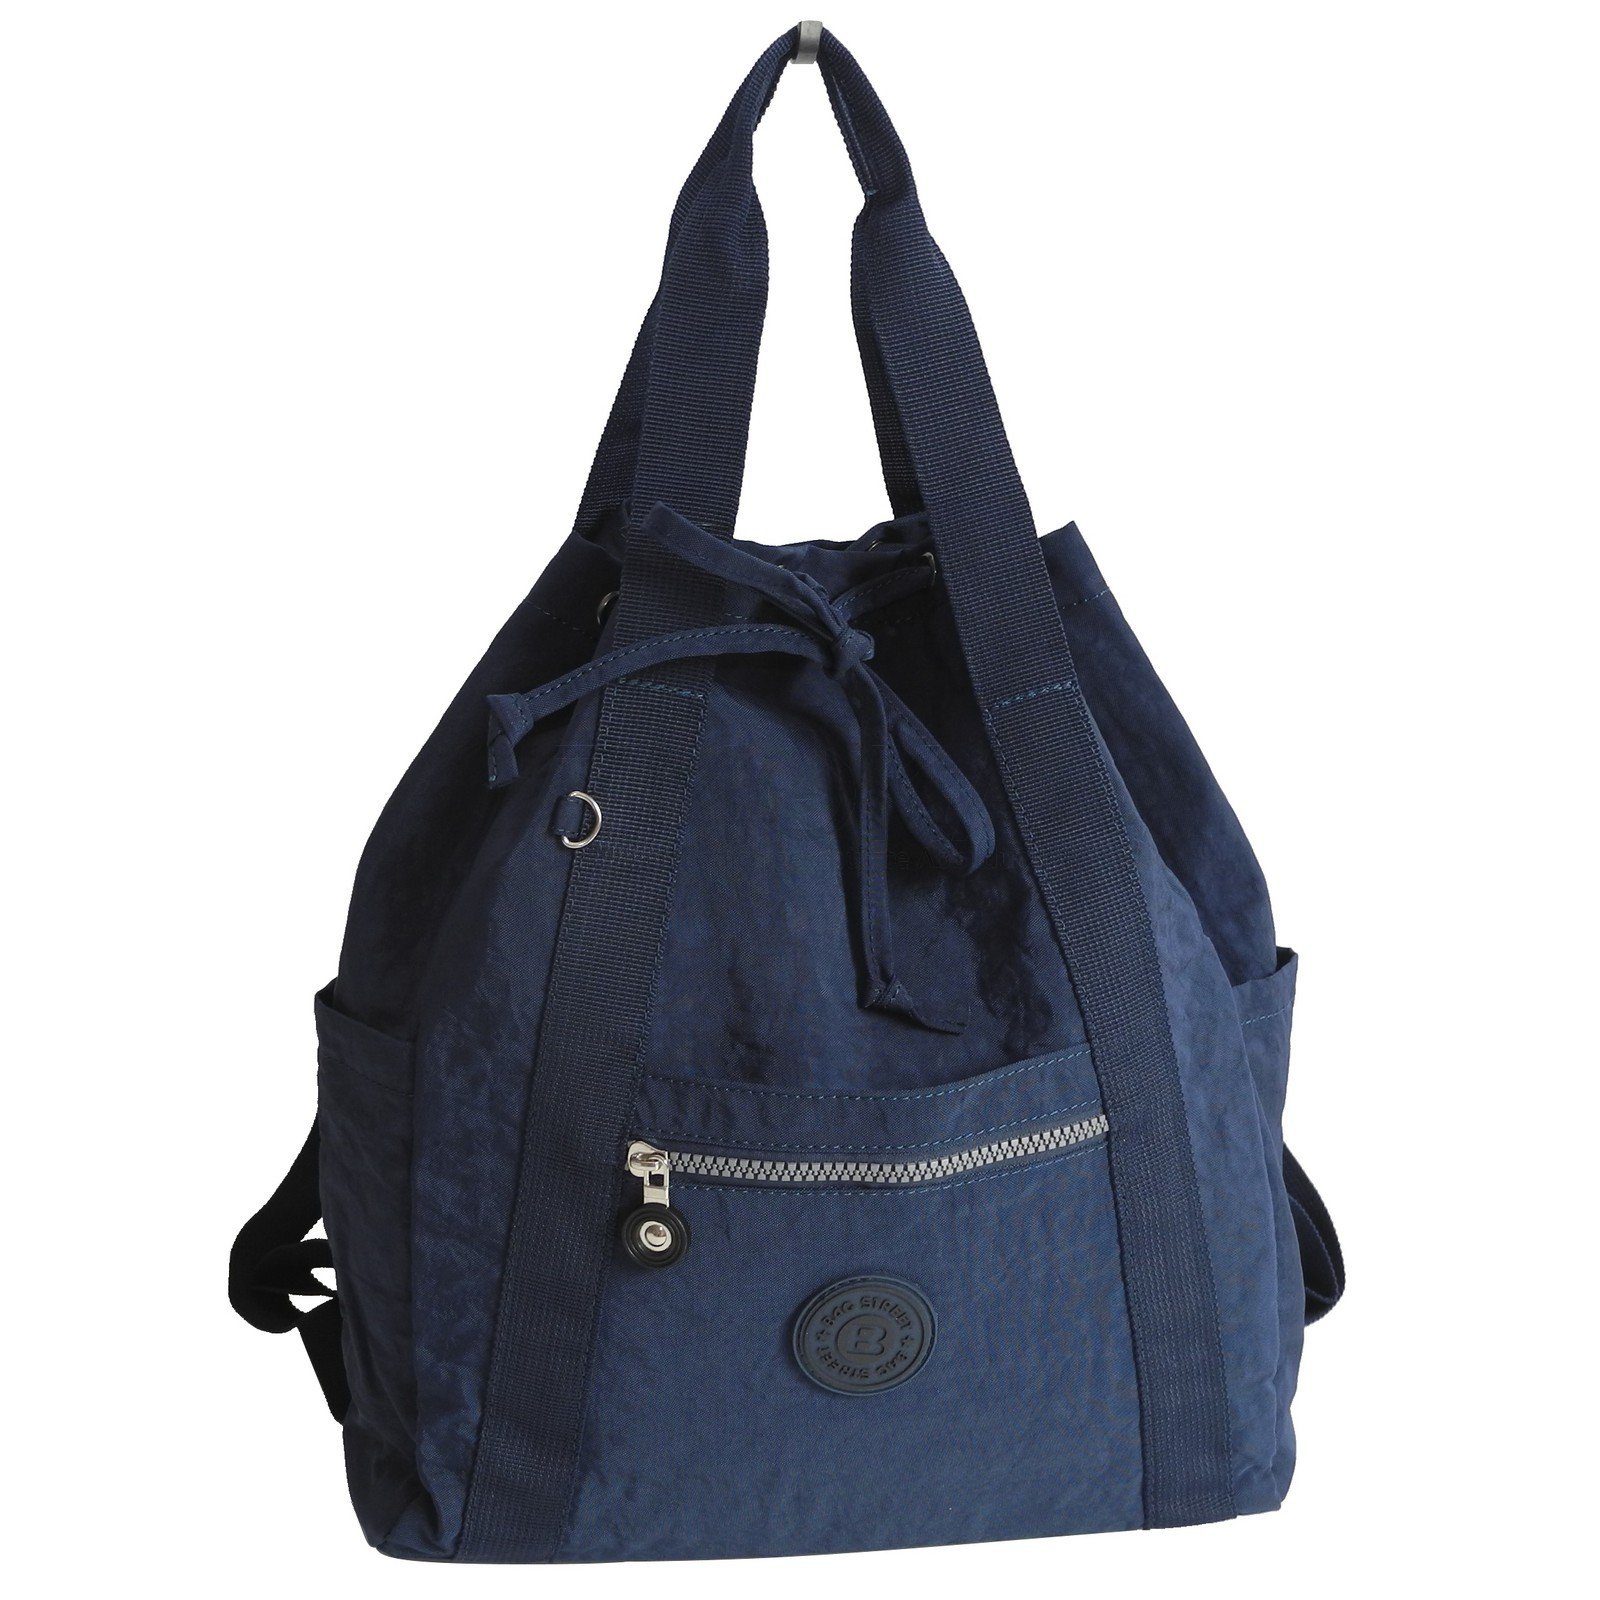 BAG STREET Cityrucksack Bag Street - leichte Damen Rucksackhandtasche Navy